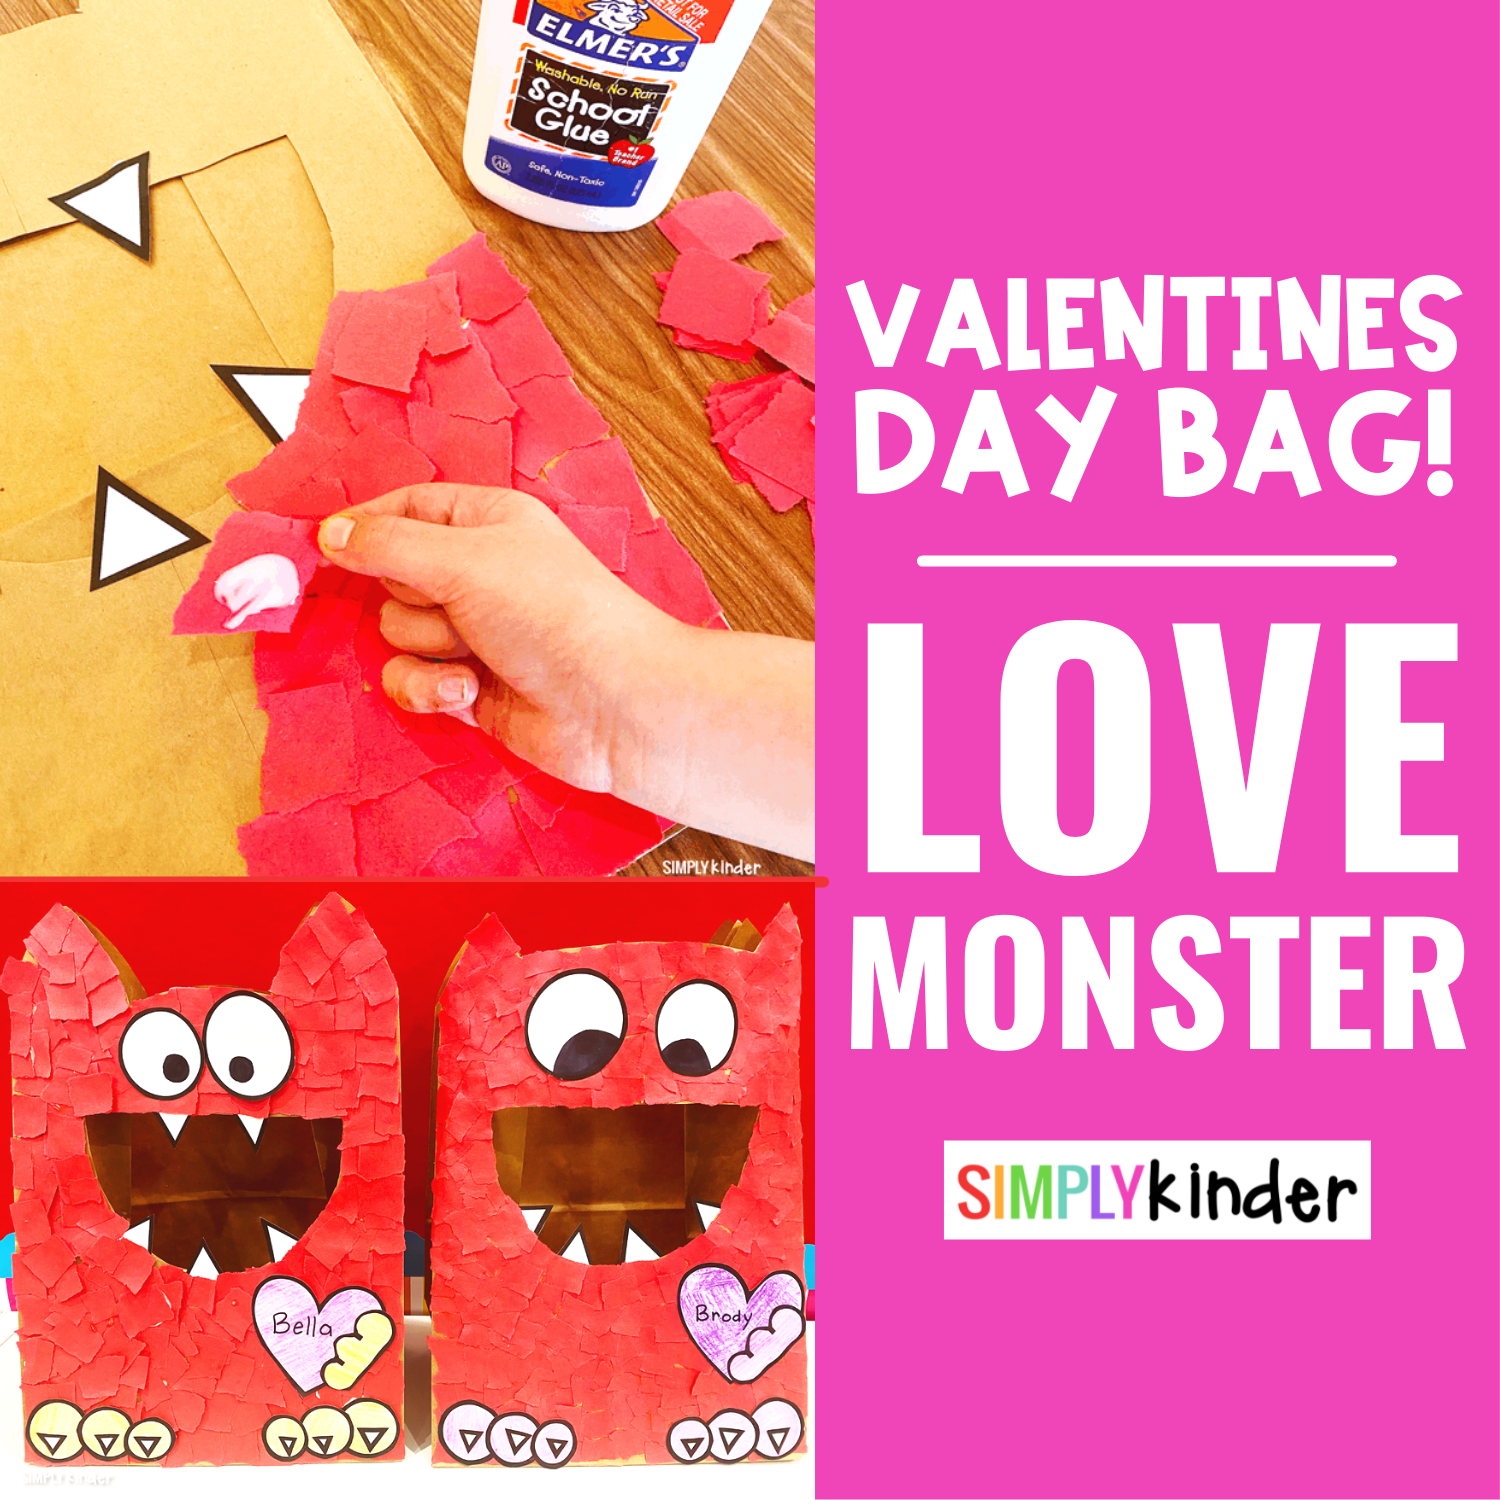 Love Monster Valentine Day Bag - Simply Kinder